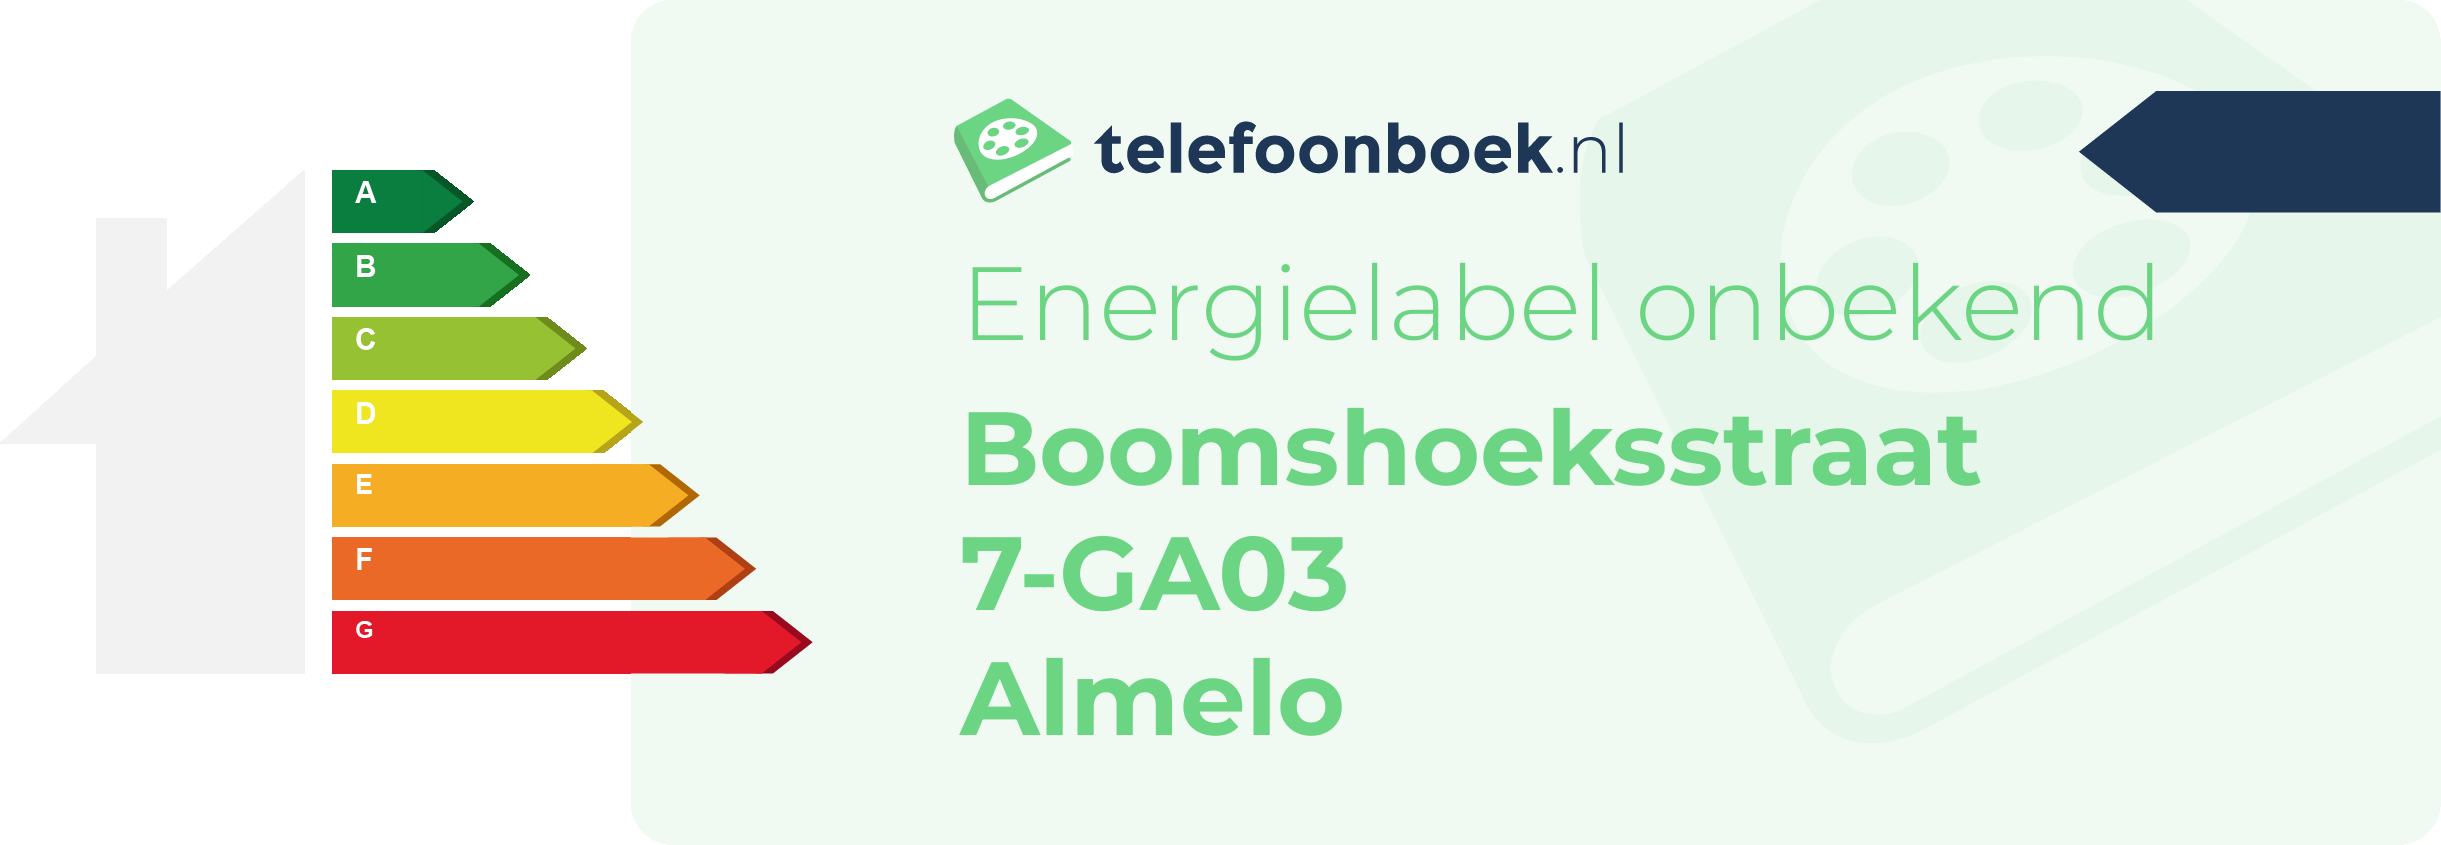 Energielabel Boomshoeksstraat 7-GA03 Almelo